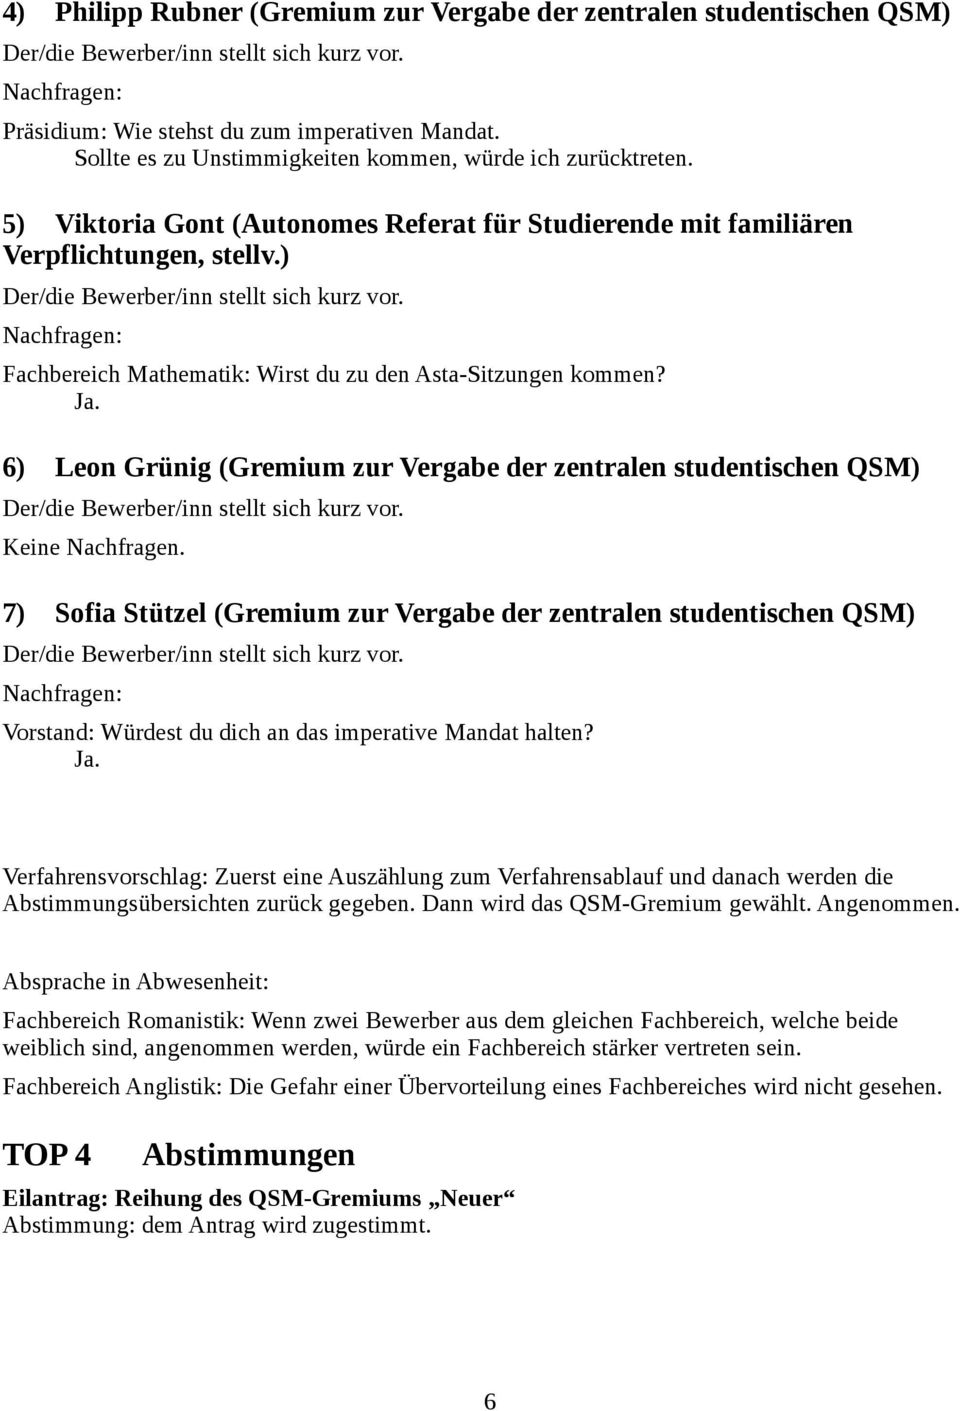 6) Leon Grünig (Gremium zur Vergabe der zentralen studentischen QSM) Keine Nachfragen.